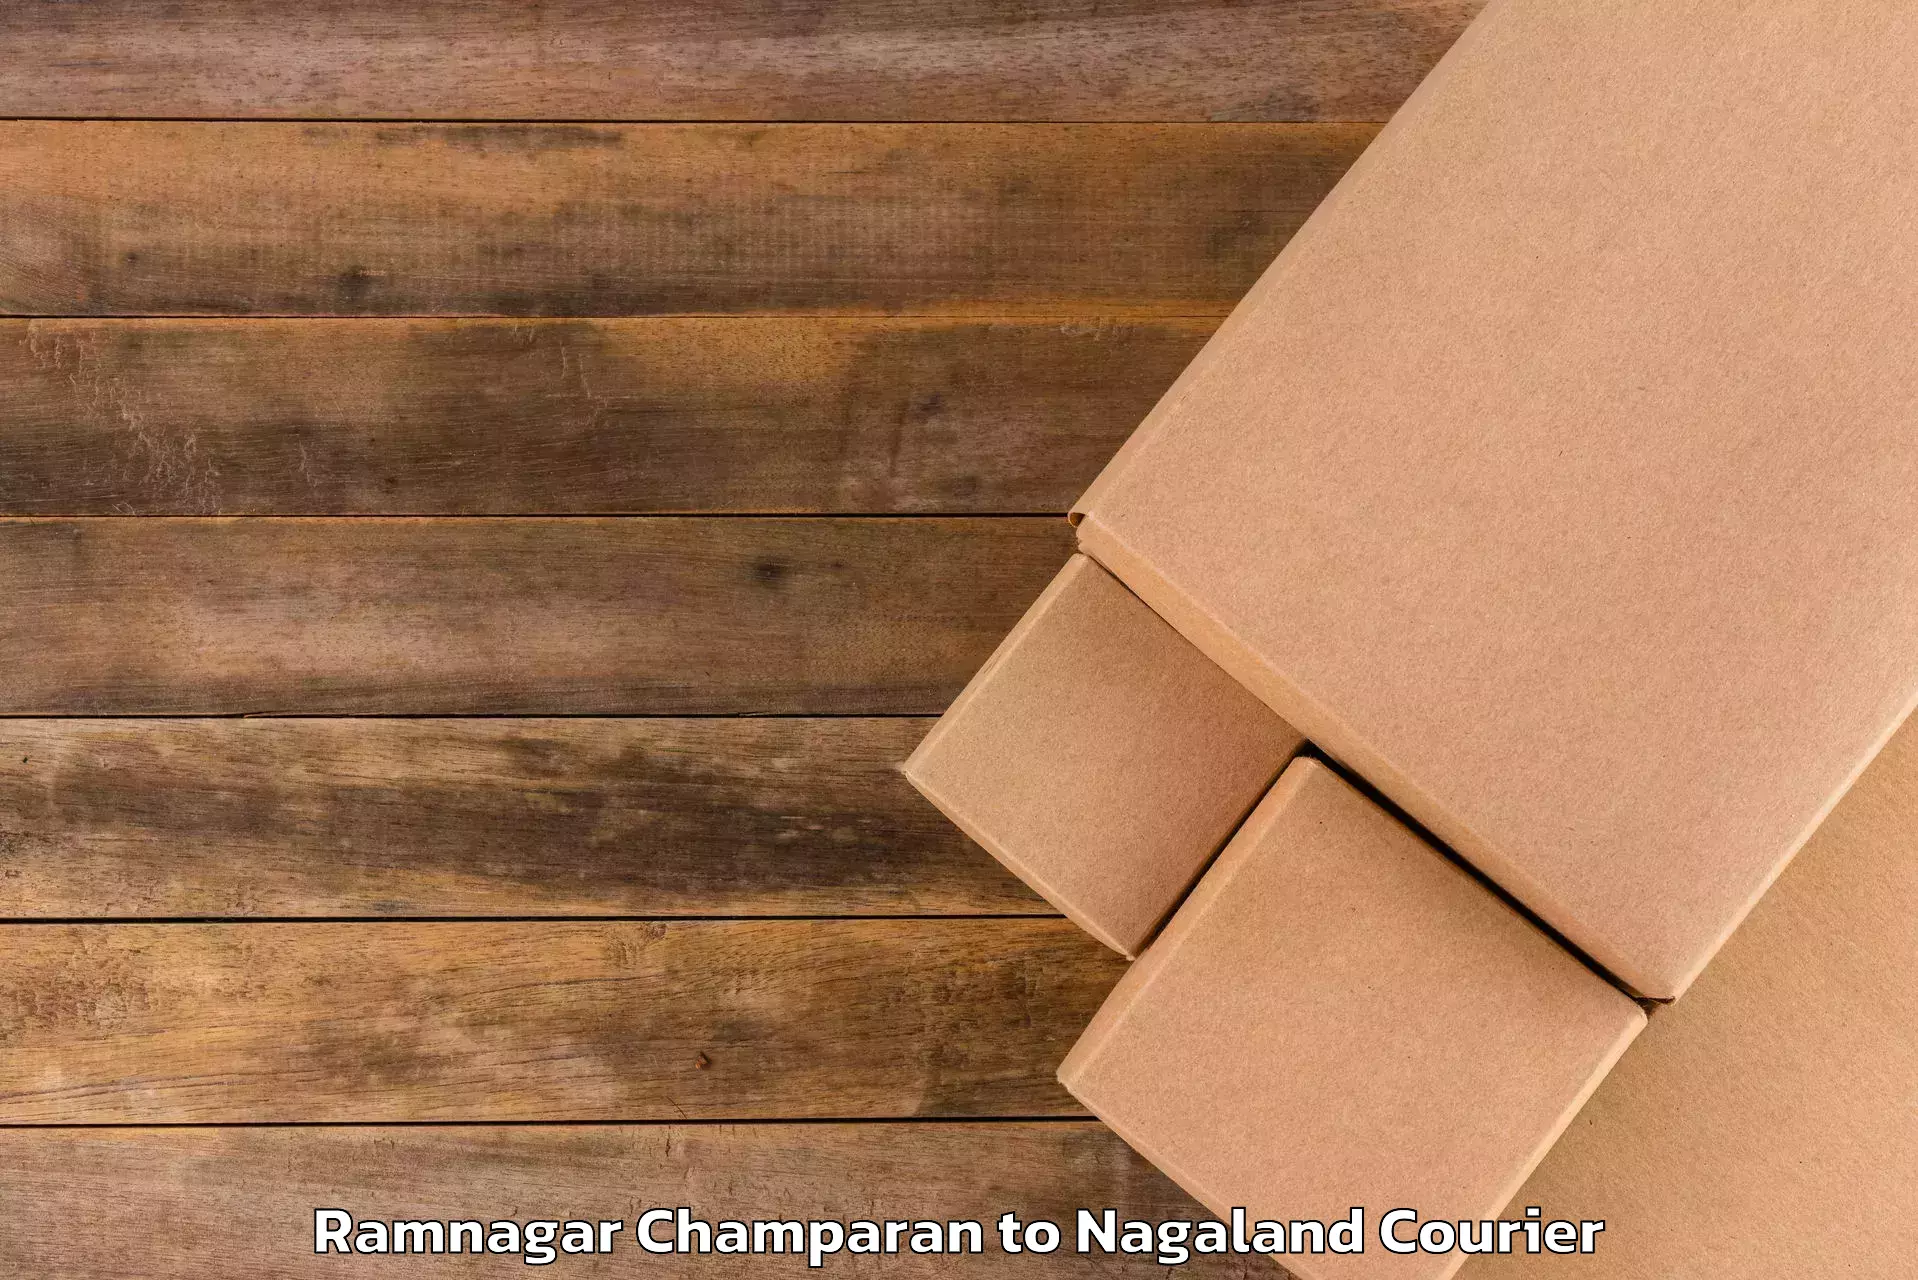 Baggage shipping experts Ramnagar Champaran to Nagaland